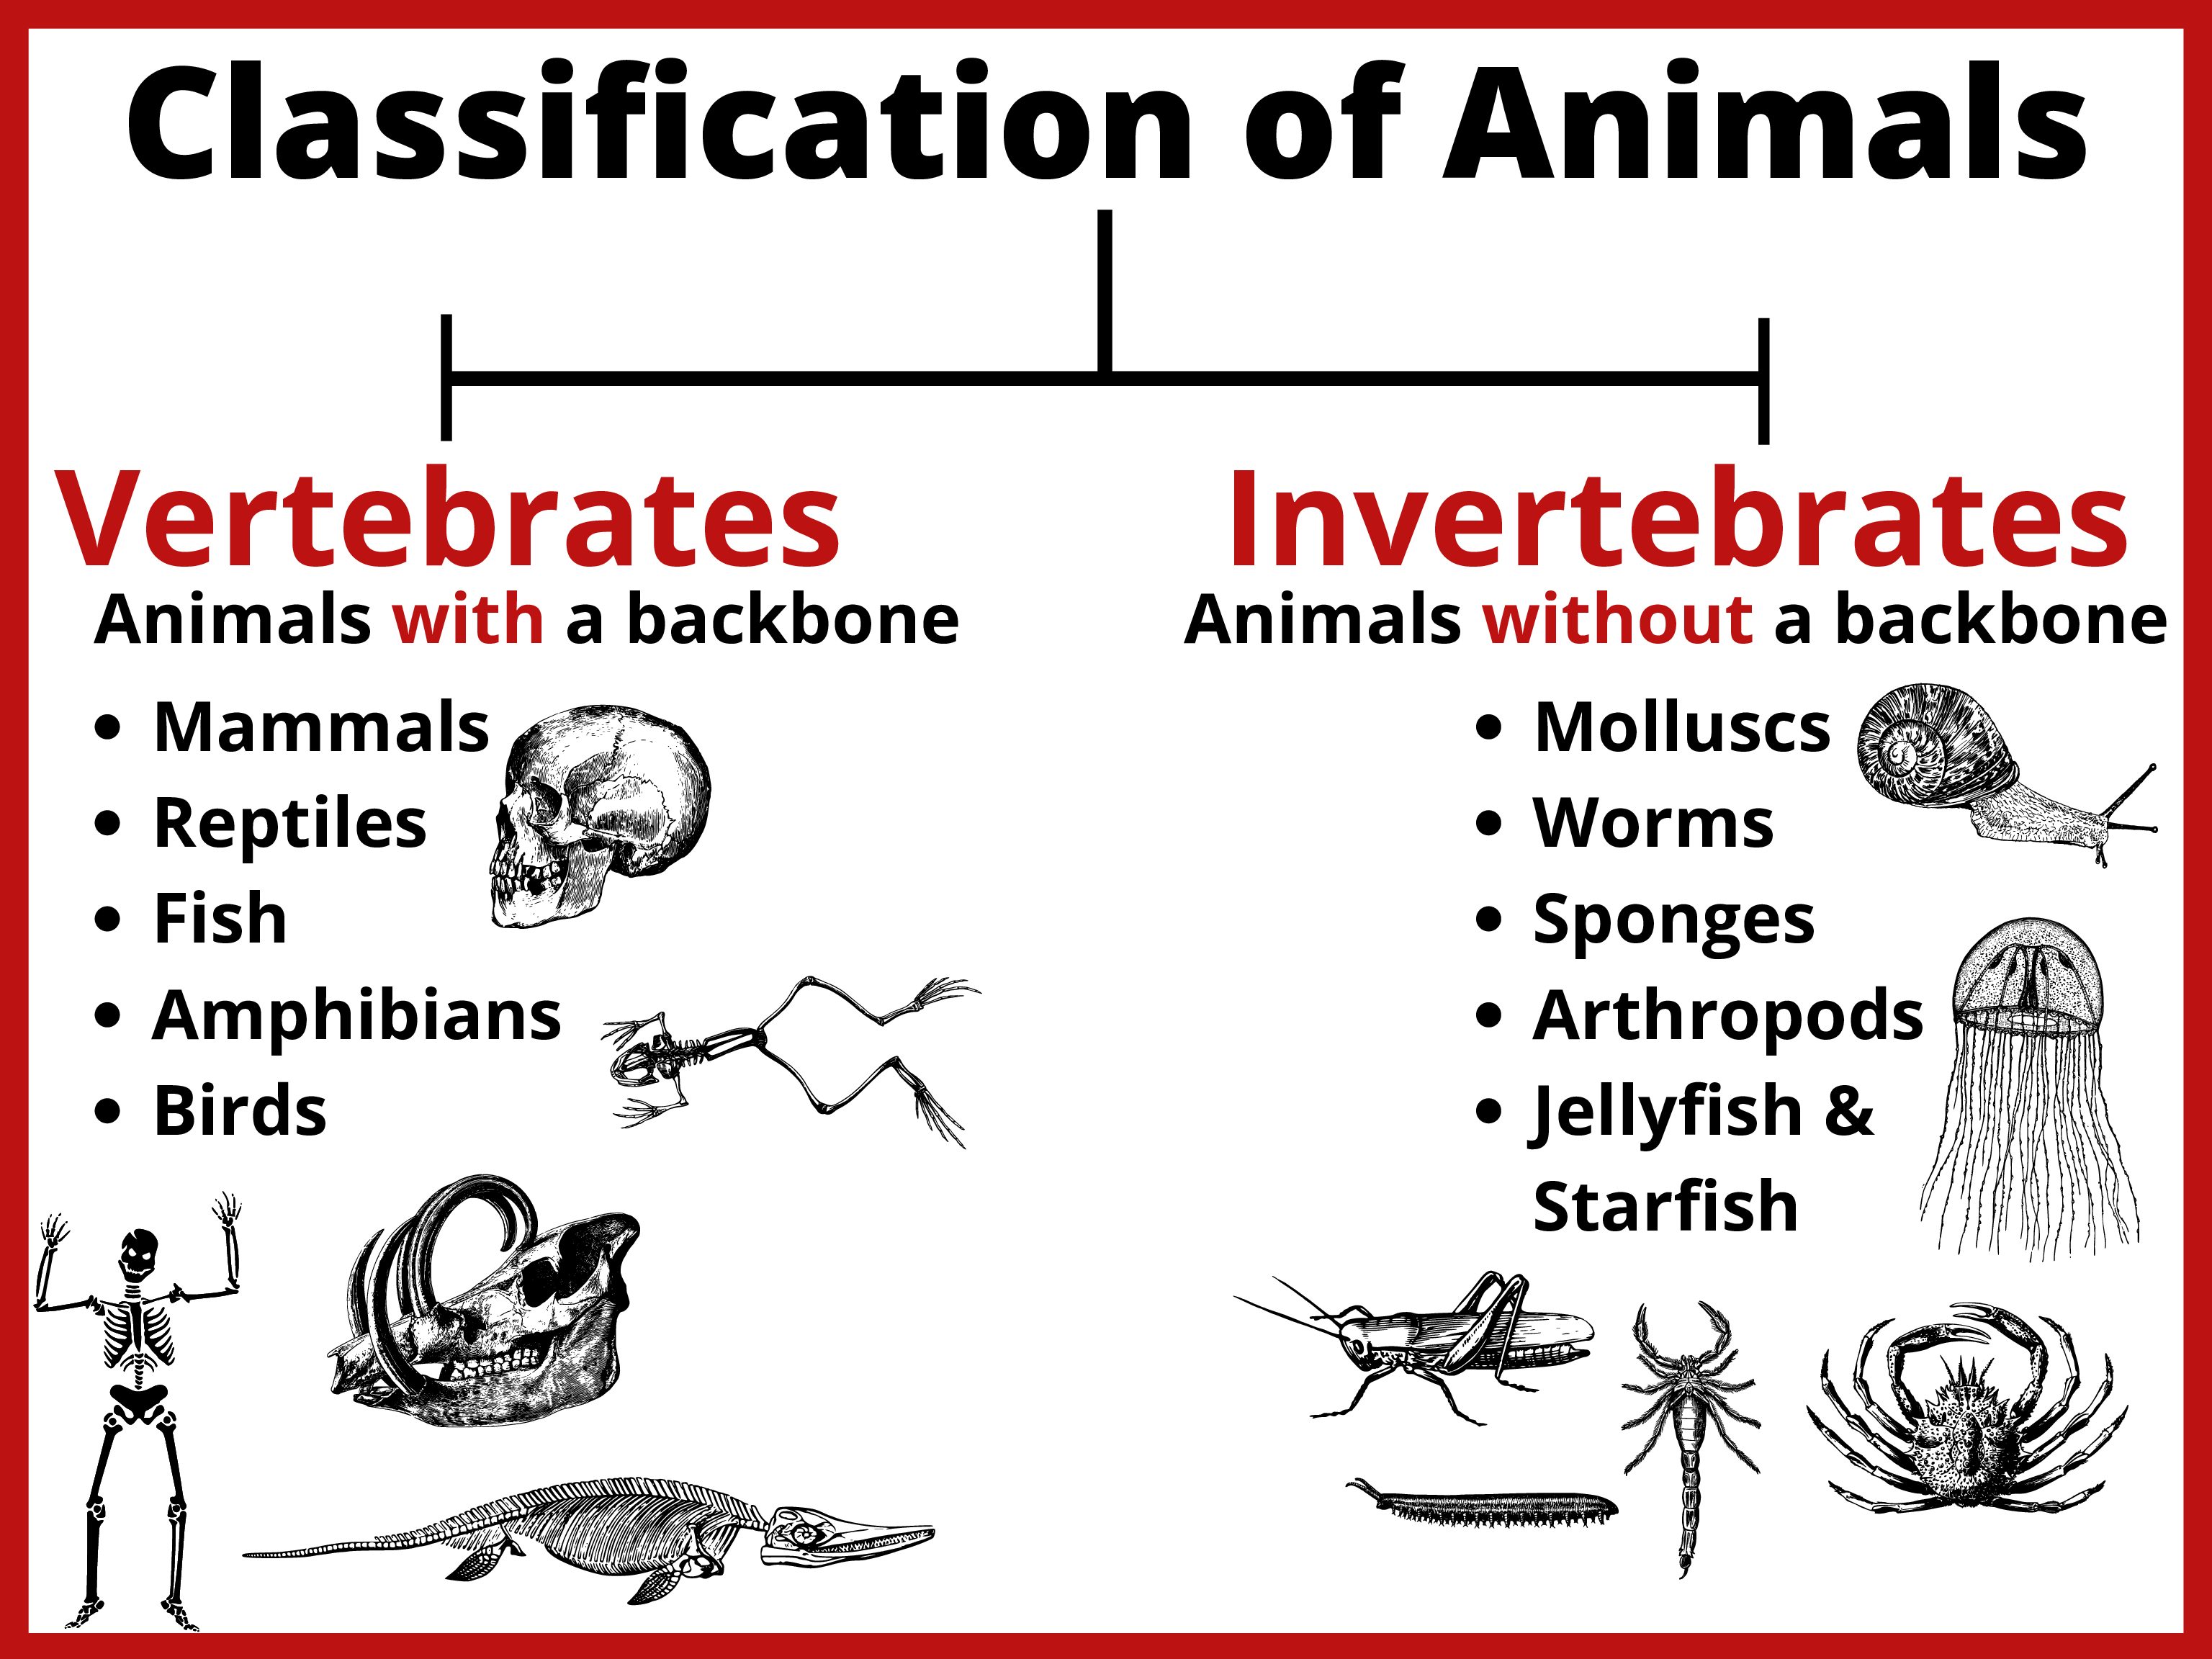 Free Printable Animal Classification Chart - Image to u